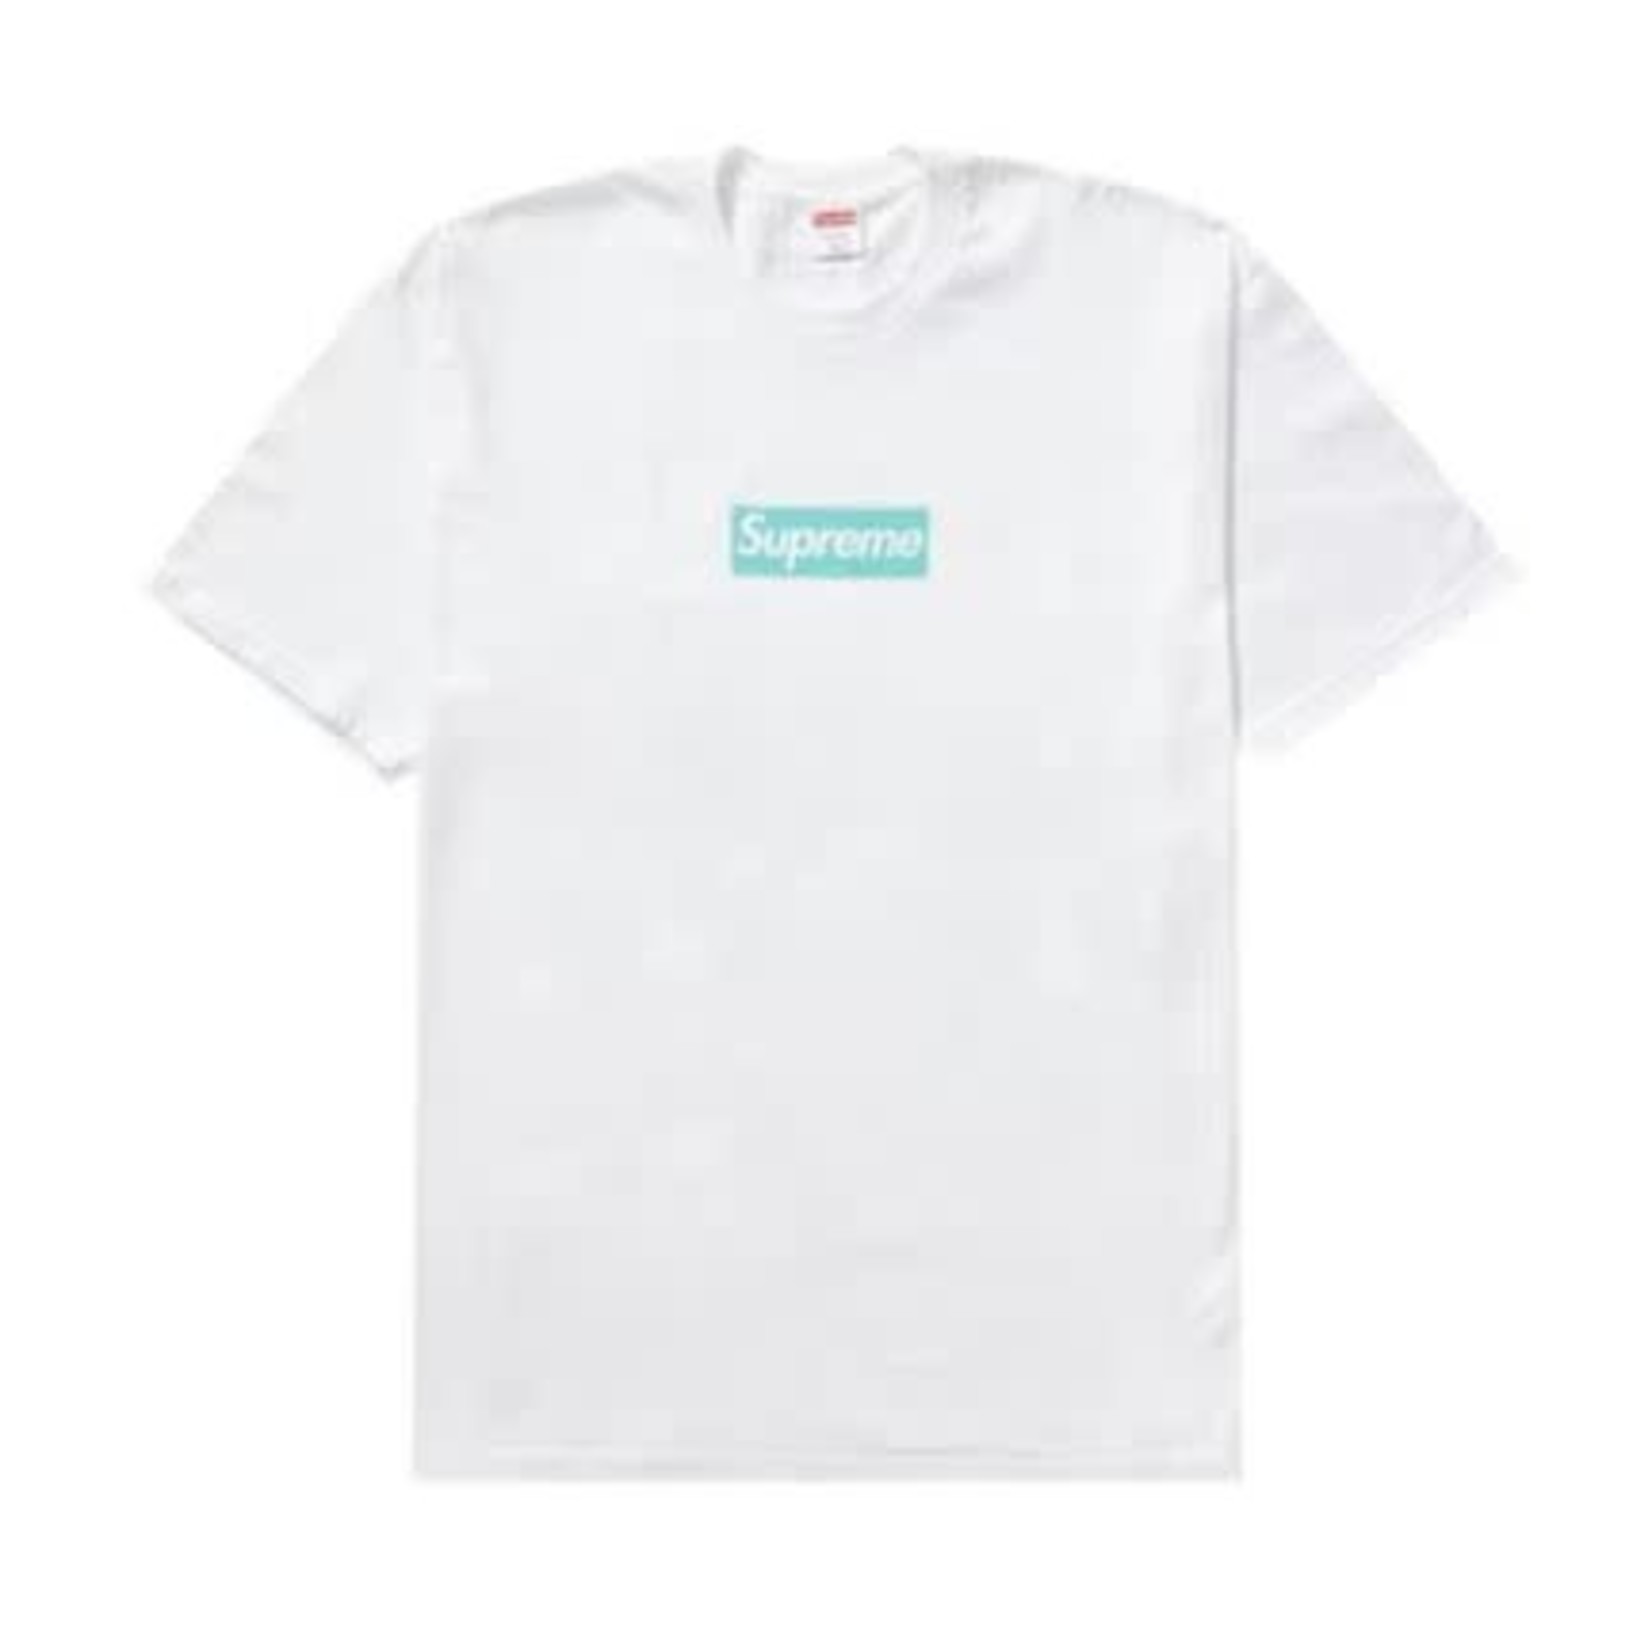 Supreme x Tiffany & Co Box Logo T-Shirt - Quality Check : r/DHgate